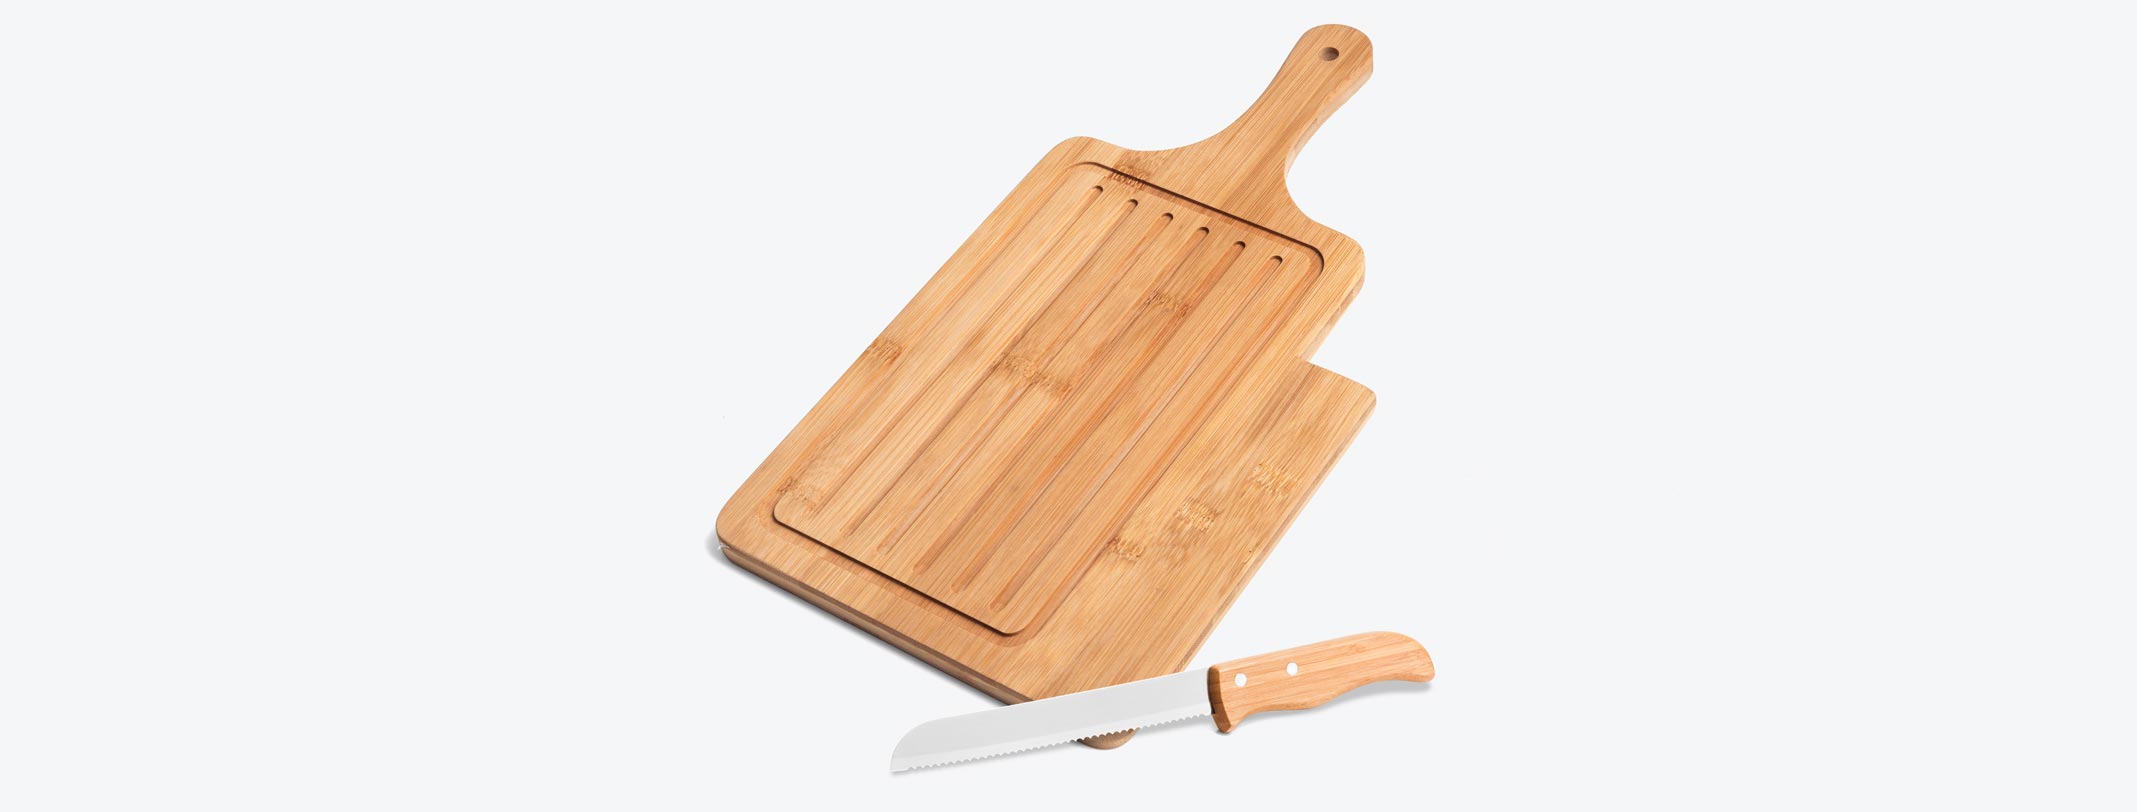 Migalheira / Tábua em Bambu com faca para pão 7 polegadas. Tábua com tripla camada invertida, o que dá mais resistência.